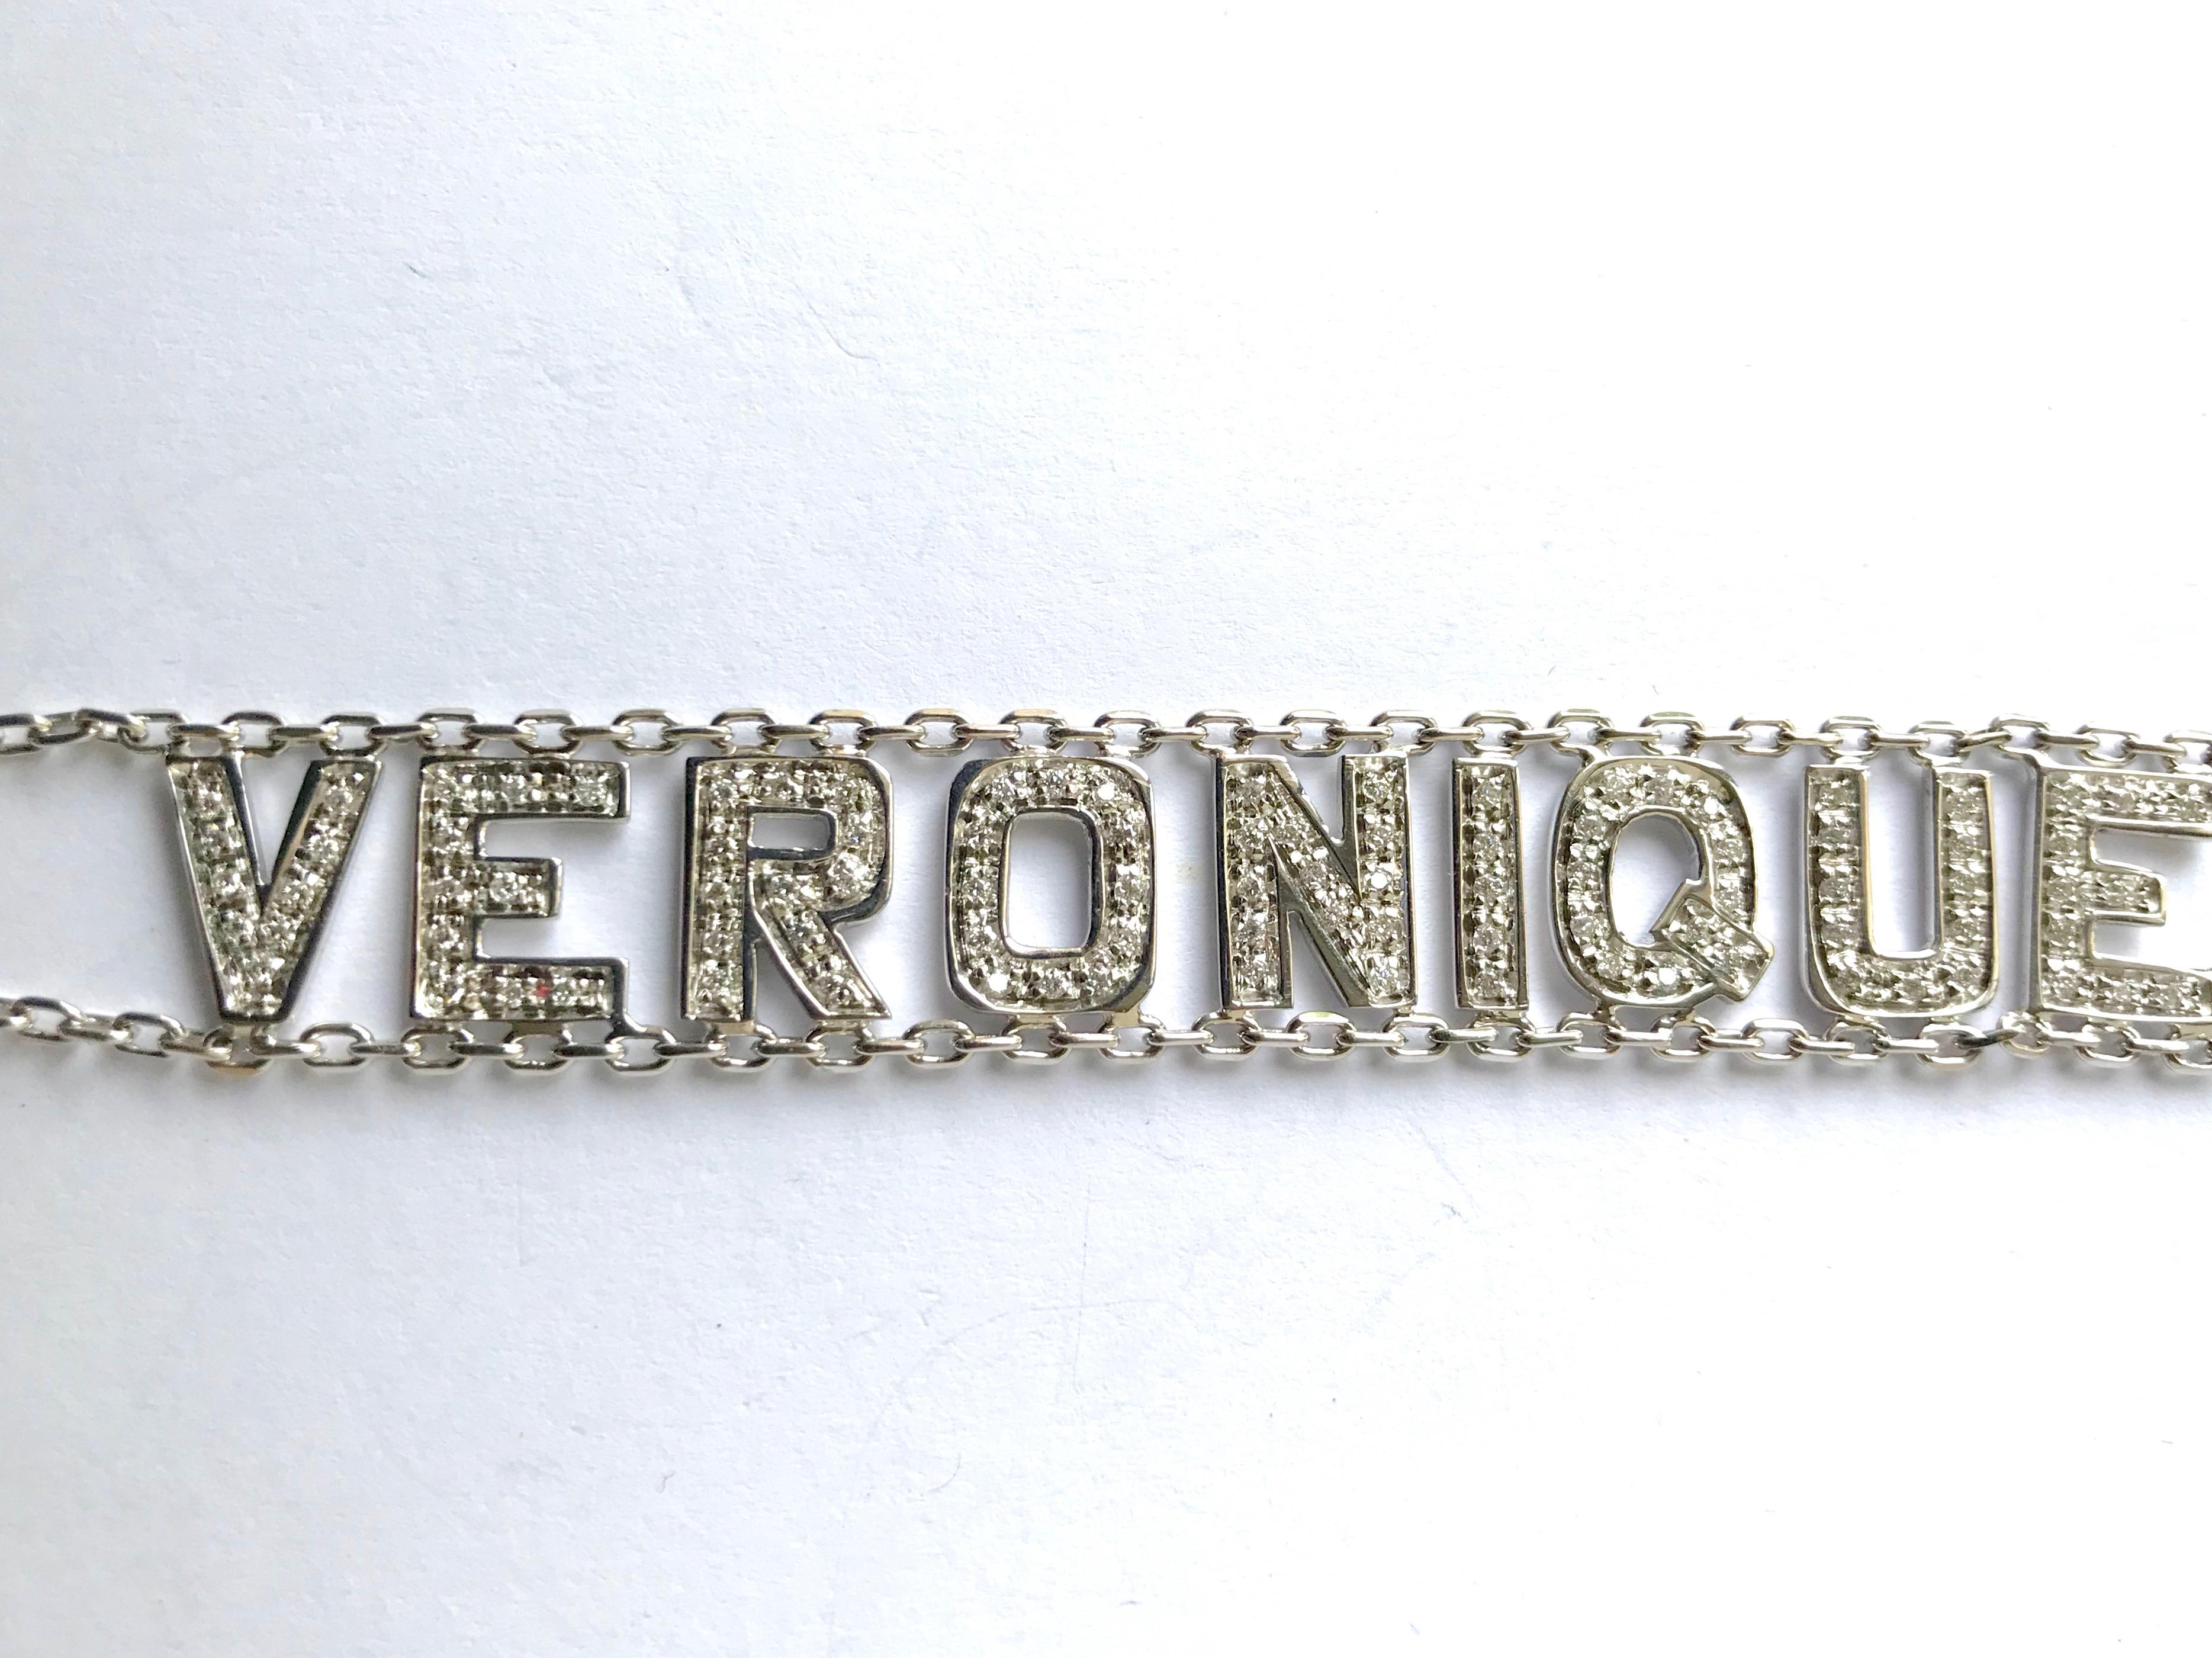 Armband aus 18 Kt (750 mil) Weißgold und Diamanten mit dem Vornamen Veronique. 
Zwei Ketten aus 18 Karat Weißgold tragen den Vornamen VERONIQUE, dessen Buchstaben vollständig mit Diamanten besetzt sind. Dieses Armband ist nummeriert und befindet